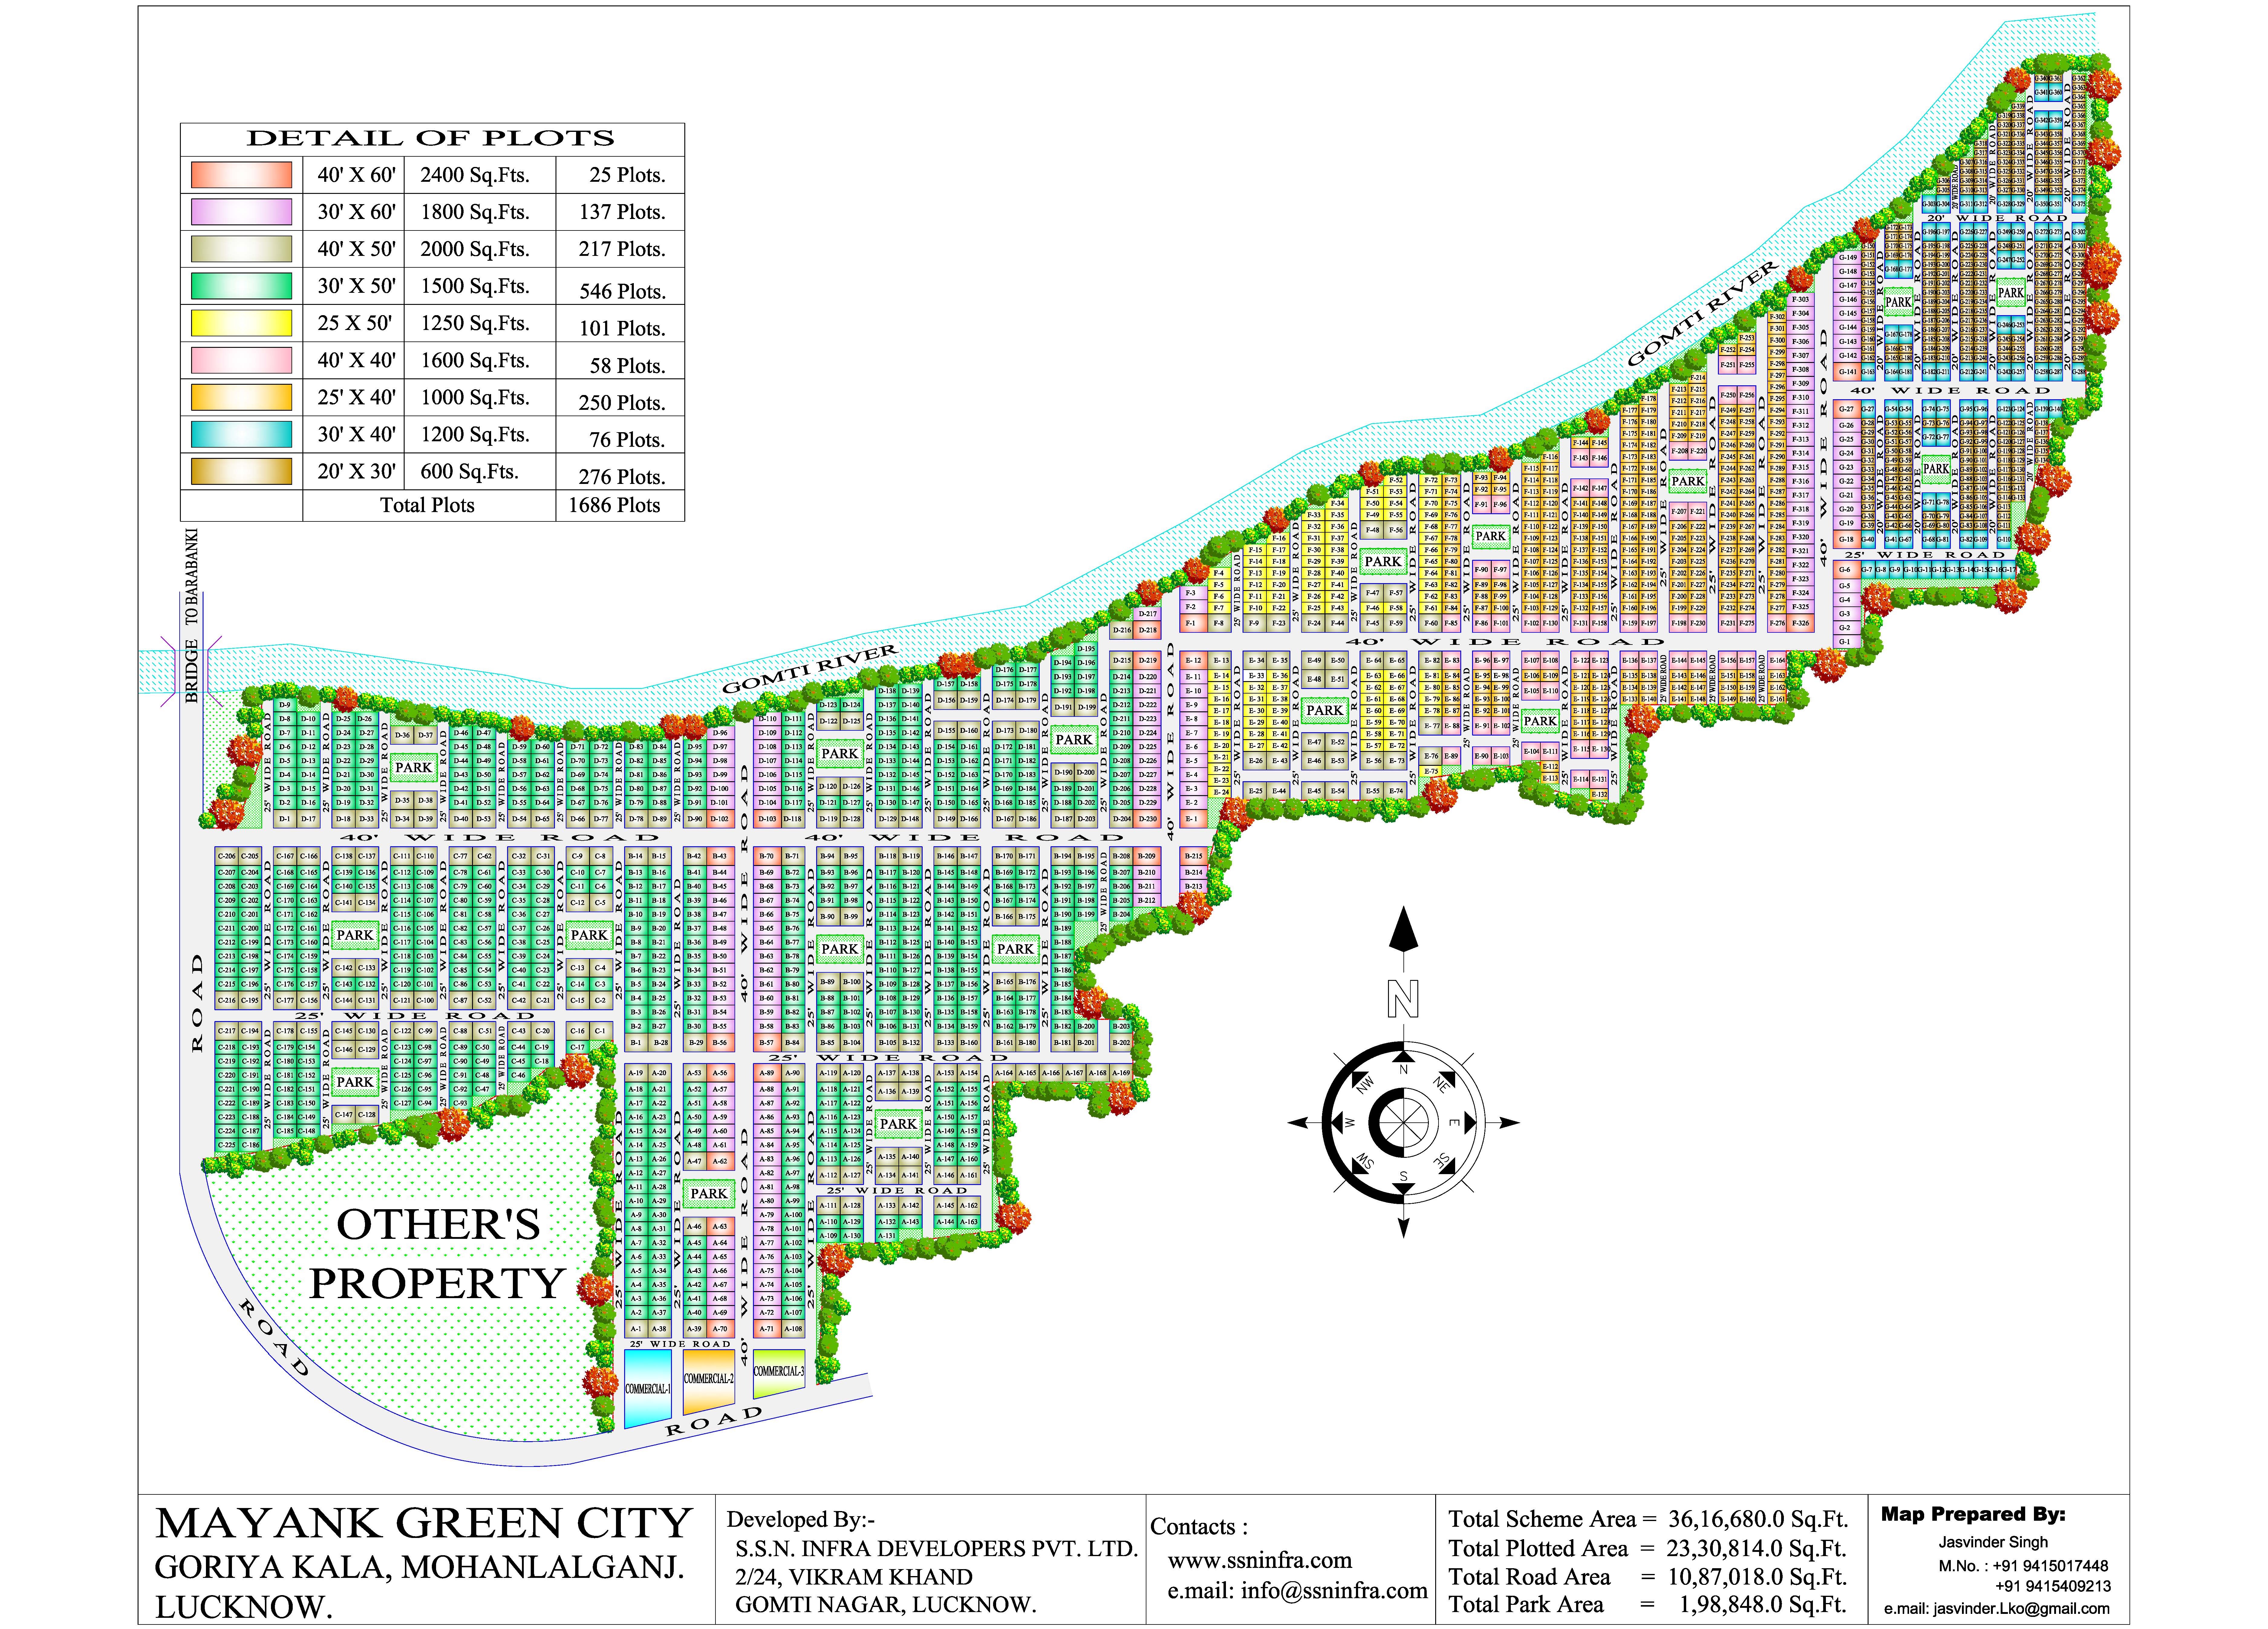 Mayank Green City Master Plan